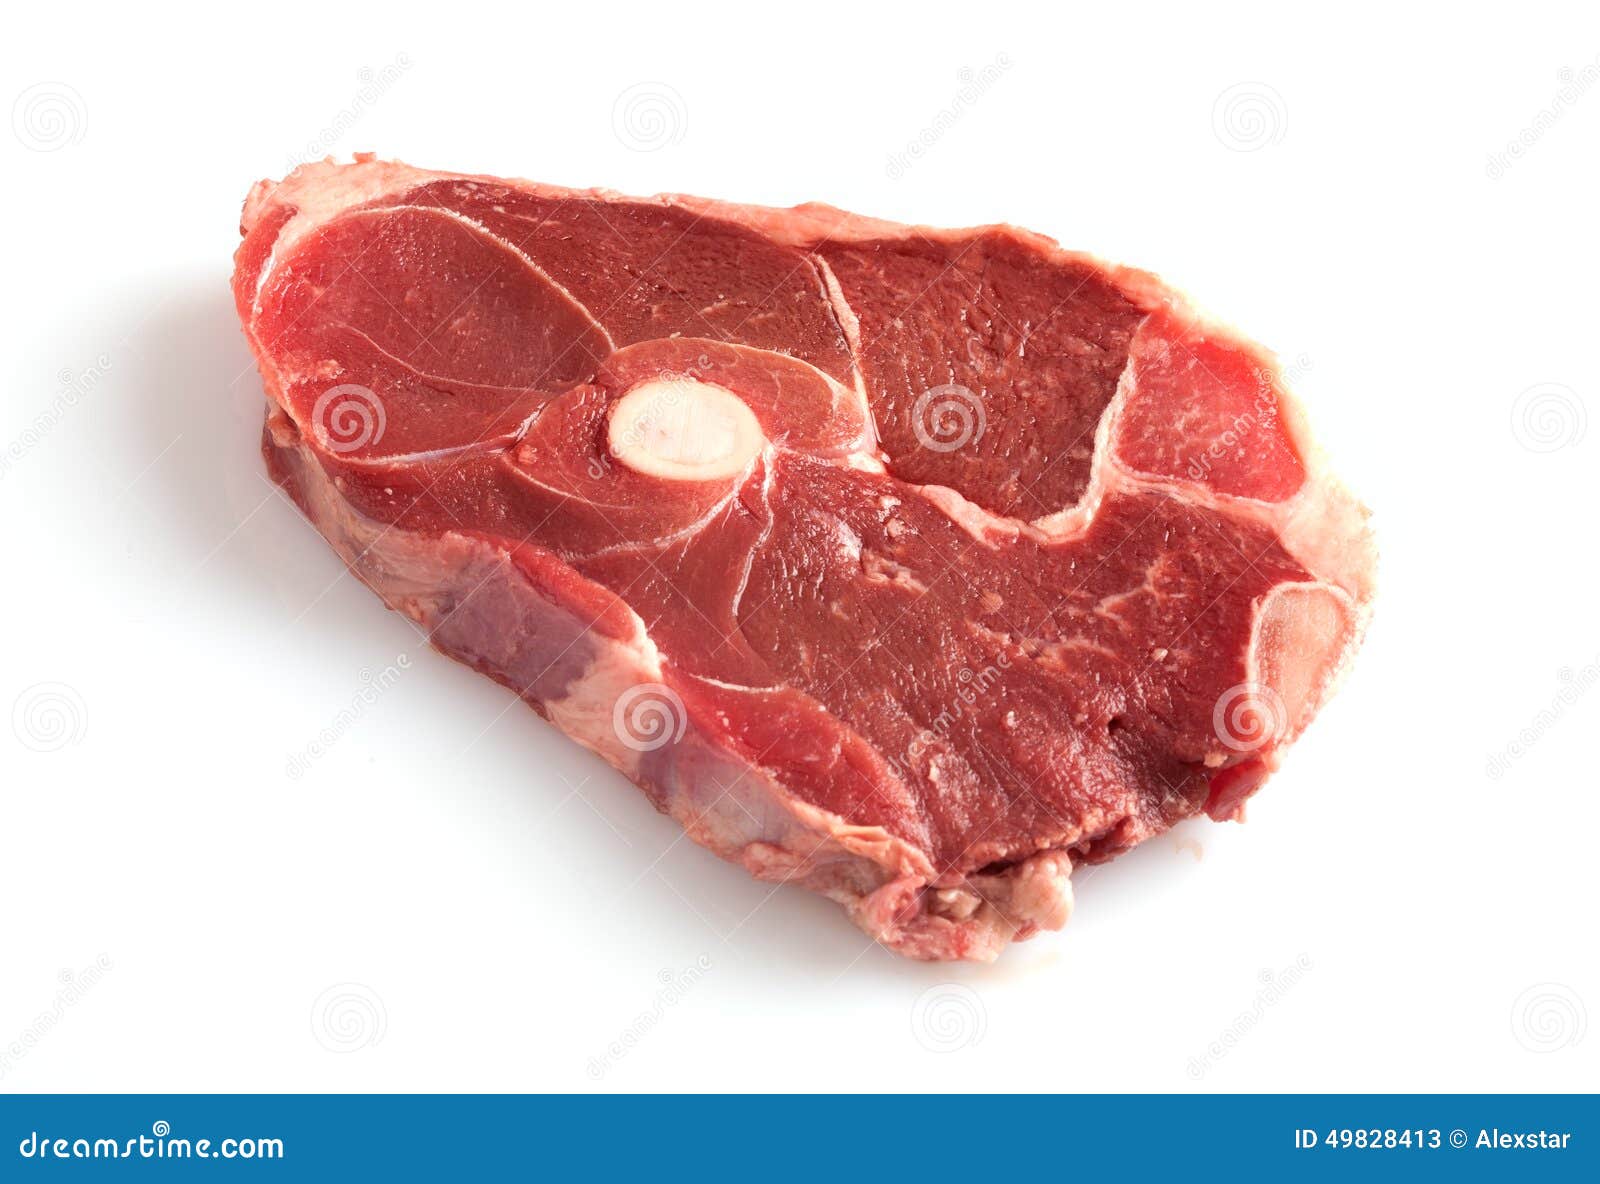 Мясо кусочками как называется. Говяжий стейк с косточкой. Кусок мяса на кости. Мясо на косточке.